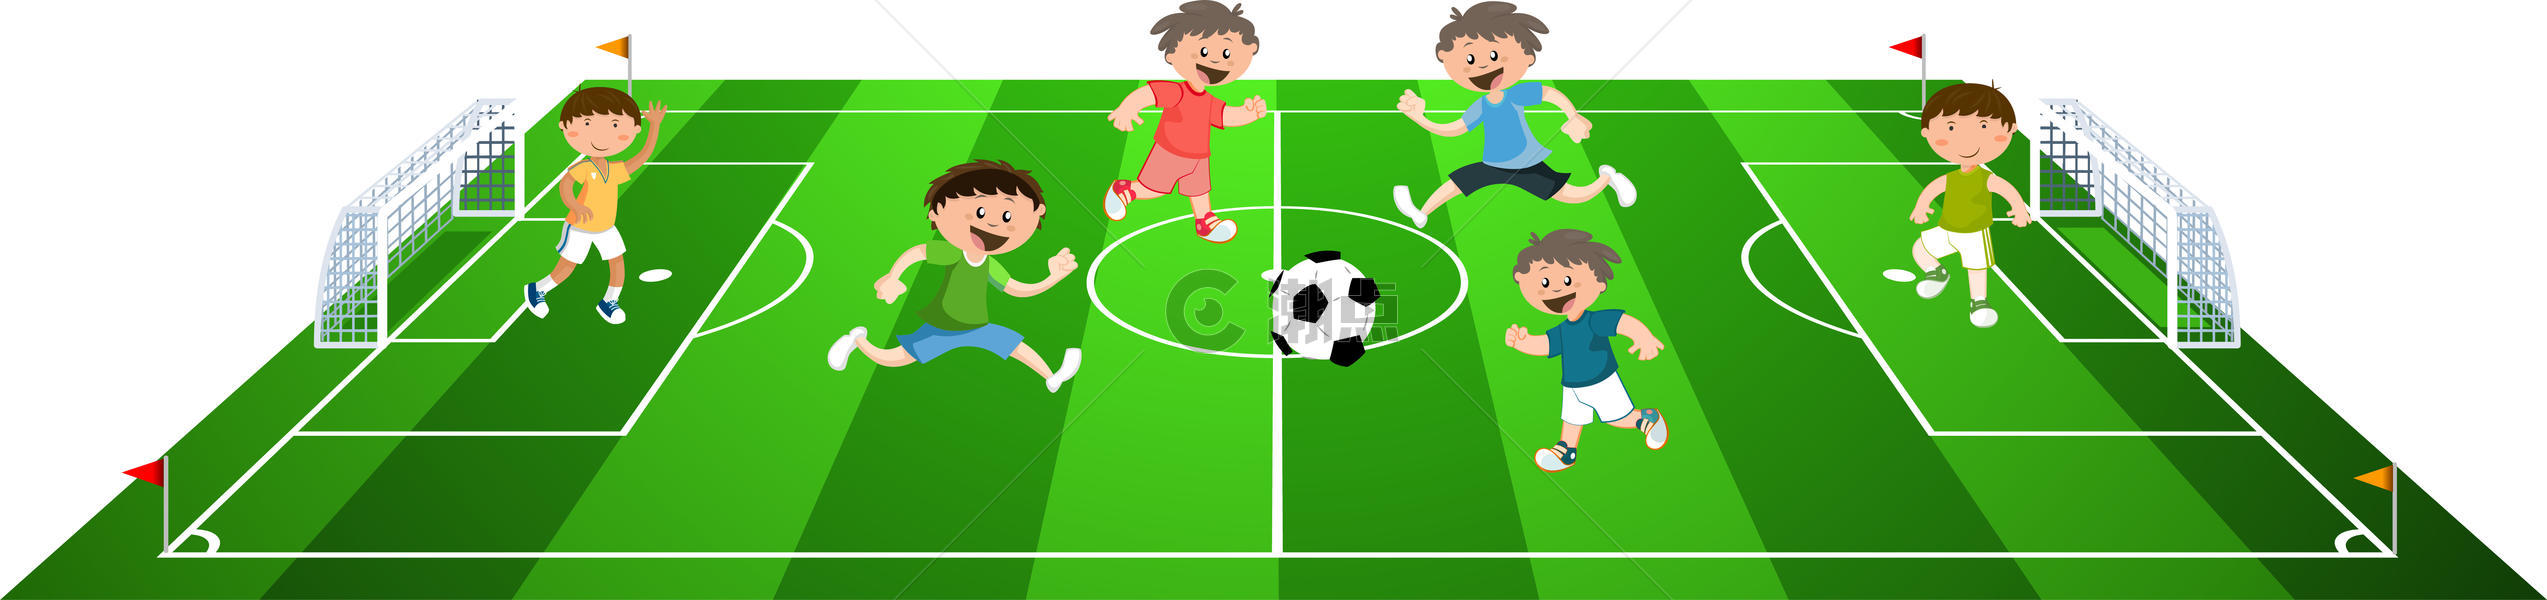 踢足球孩子图片素材免费下载